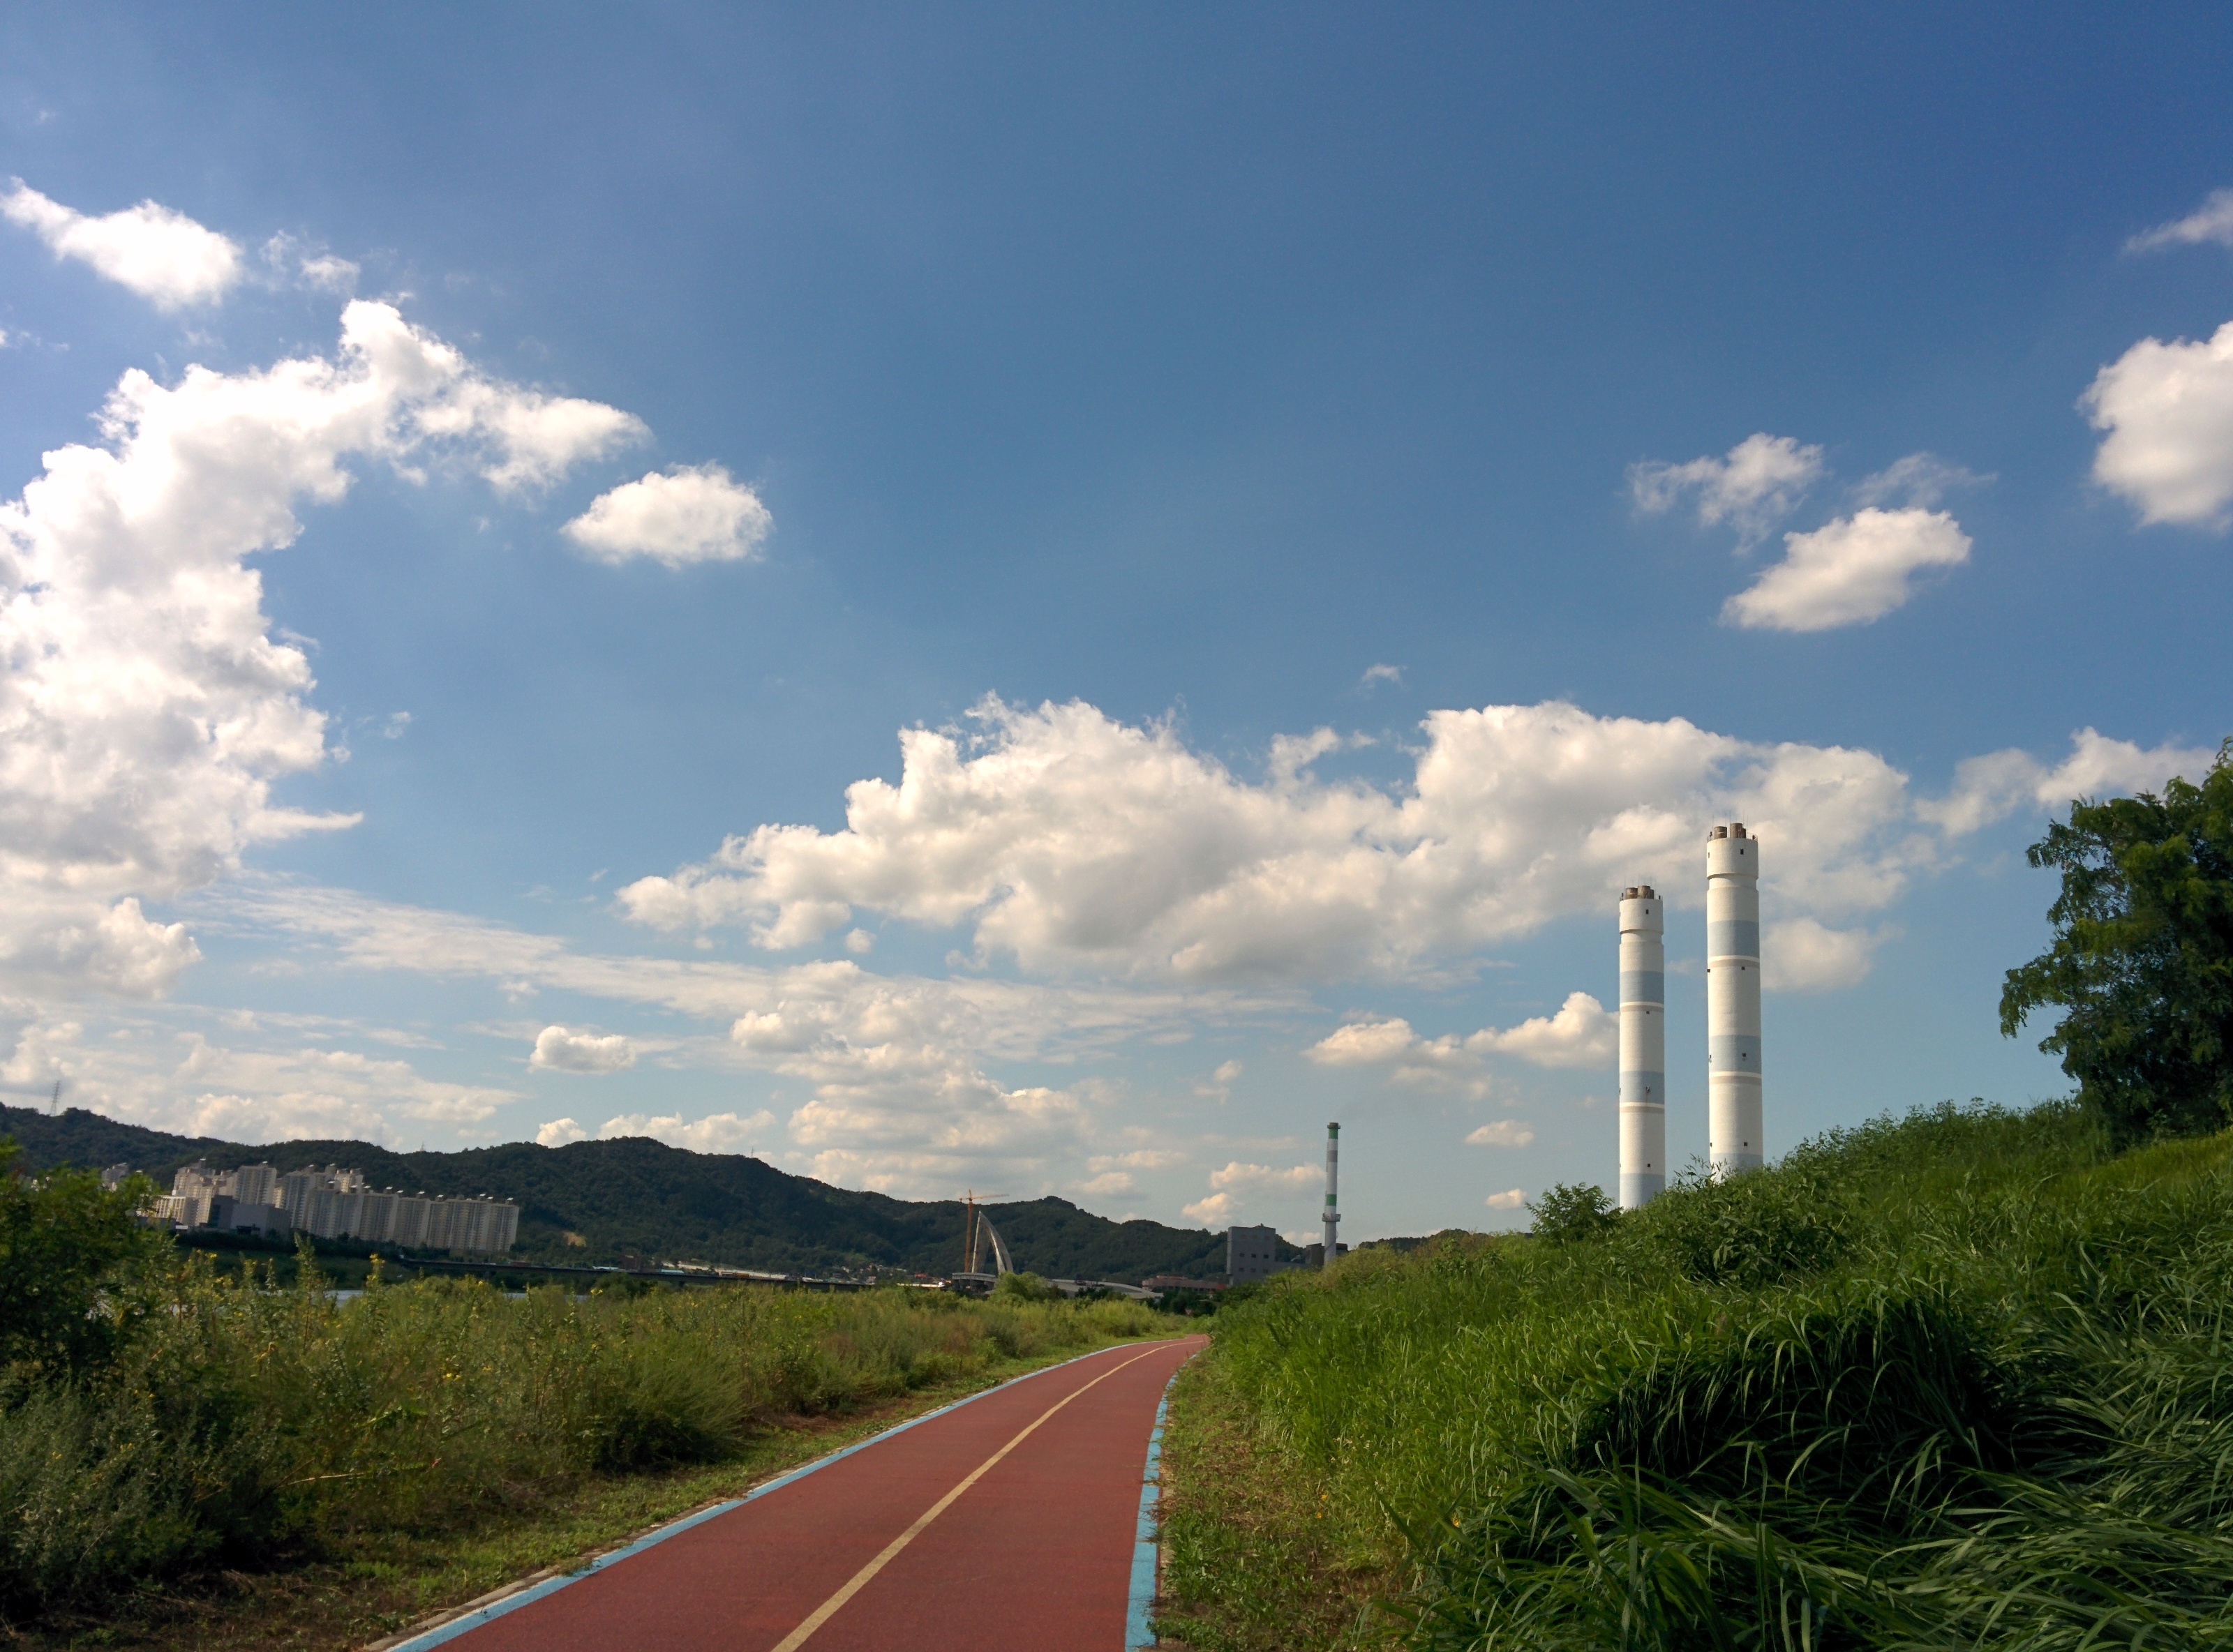 IMG_20150826_145209.jpg 신탄진 공장굴뚝, 금강엑슬루타워, 한국타이어 신탄진 공장, 뭉게구름, 가을하늘